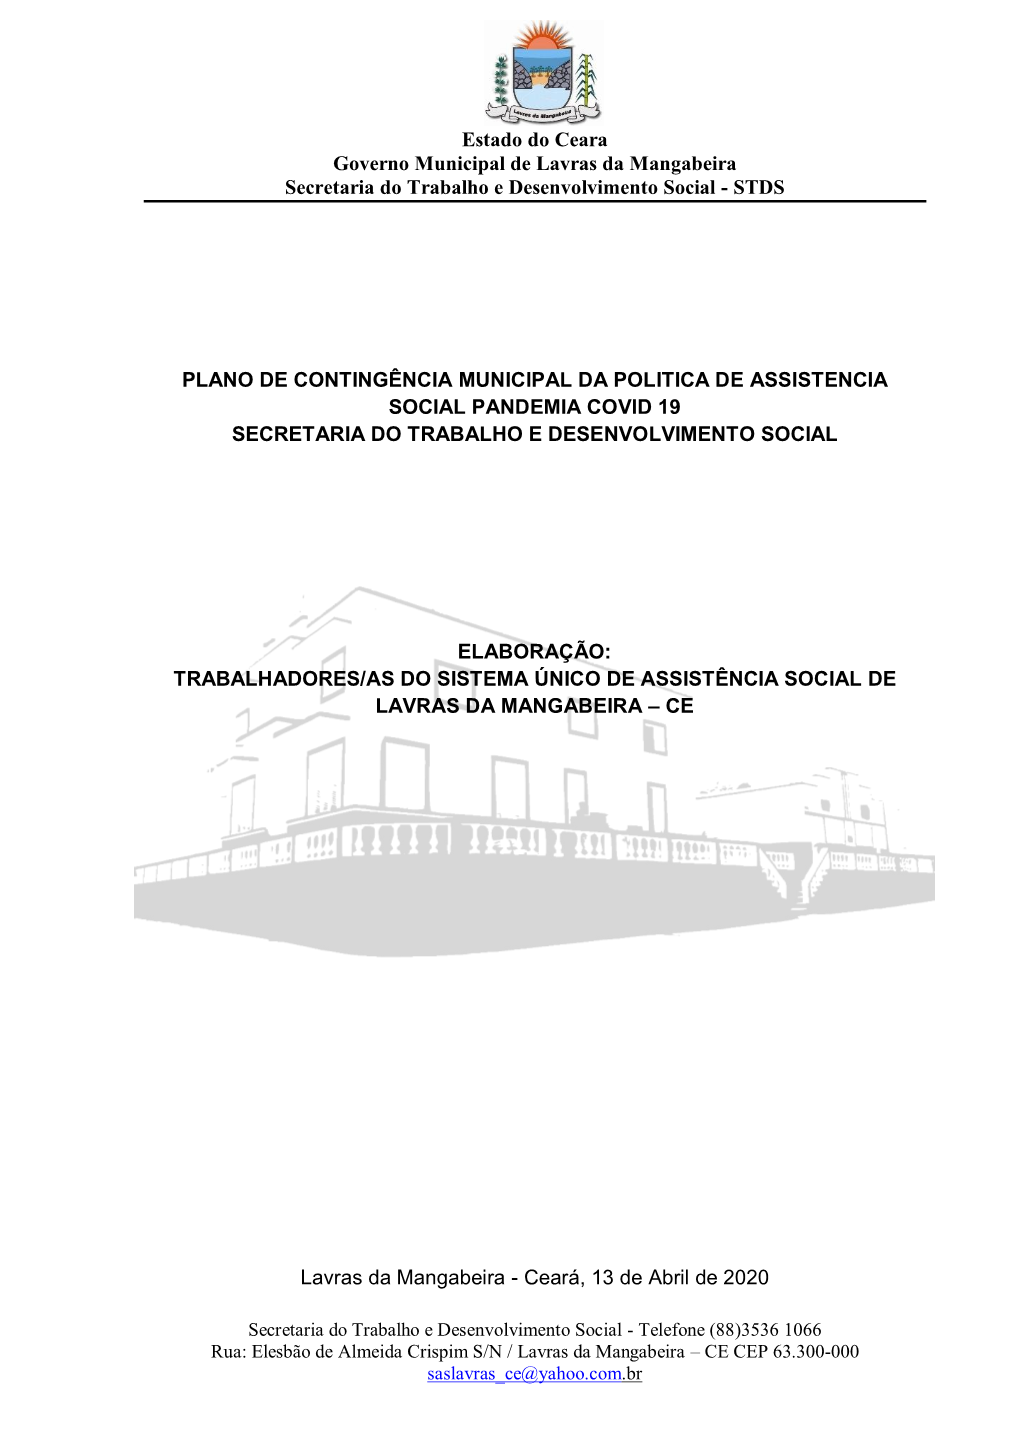 Estado Do Ceara Governo Municipal De Lavras Da Mangabeira Secretaria Do Trabalho E Desenvolvimento Social - STDS